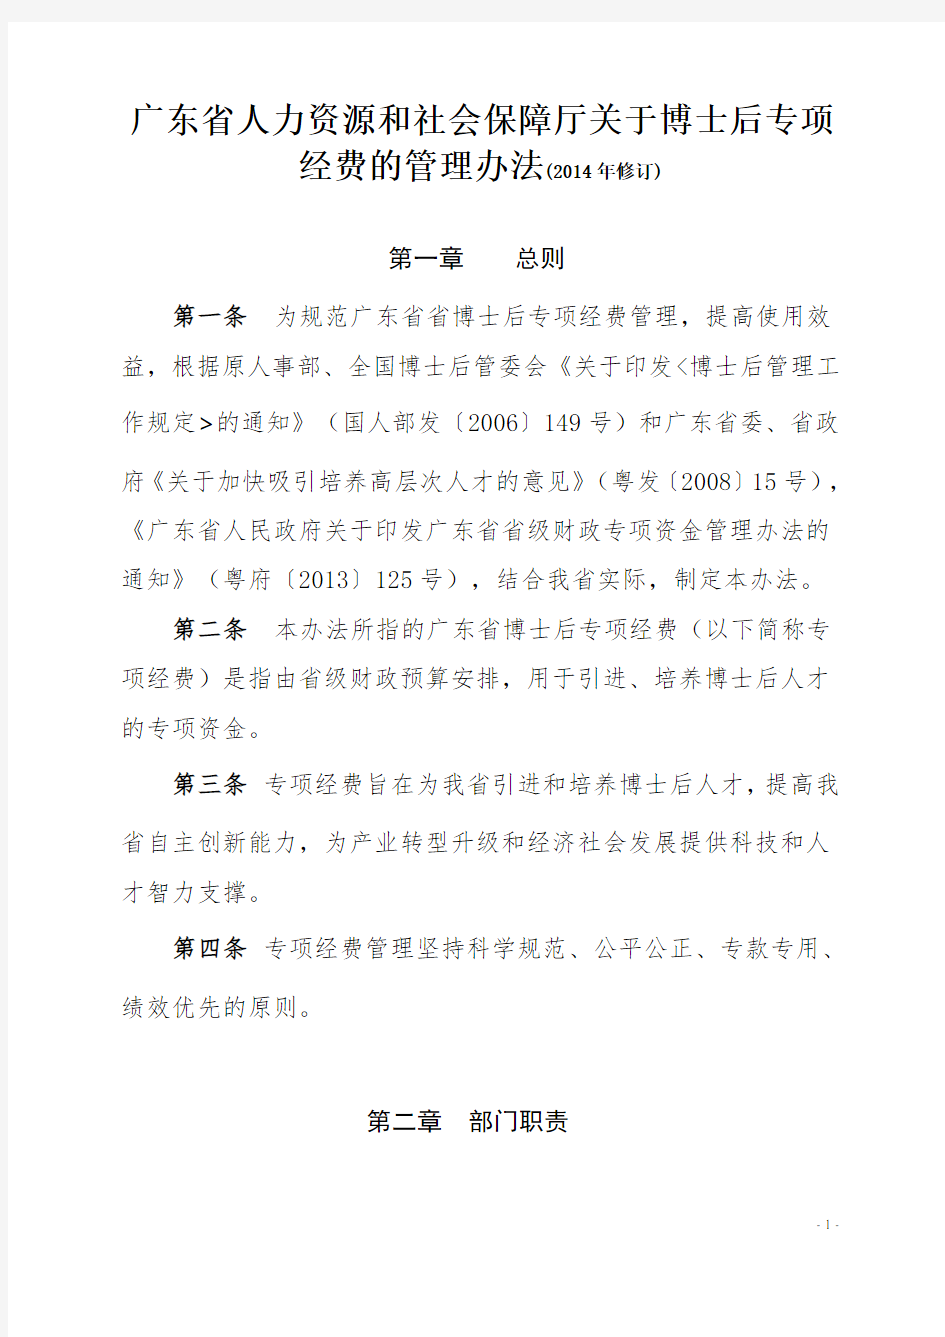 广东省人力资源和社会保障厅关于博士后专项经费的管理办法(2014)